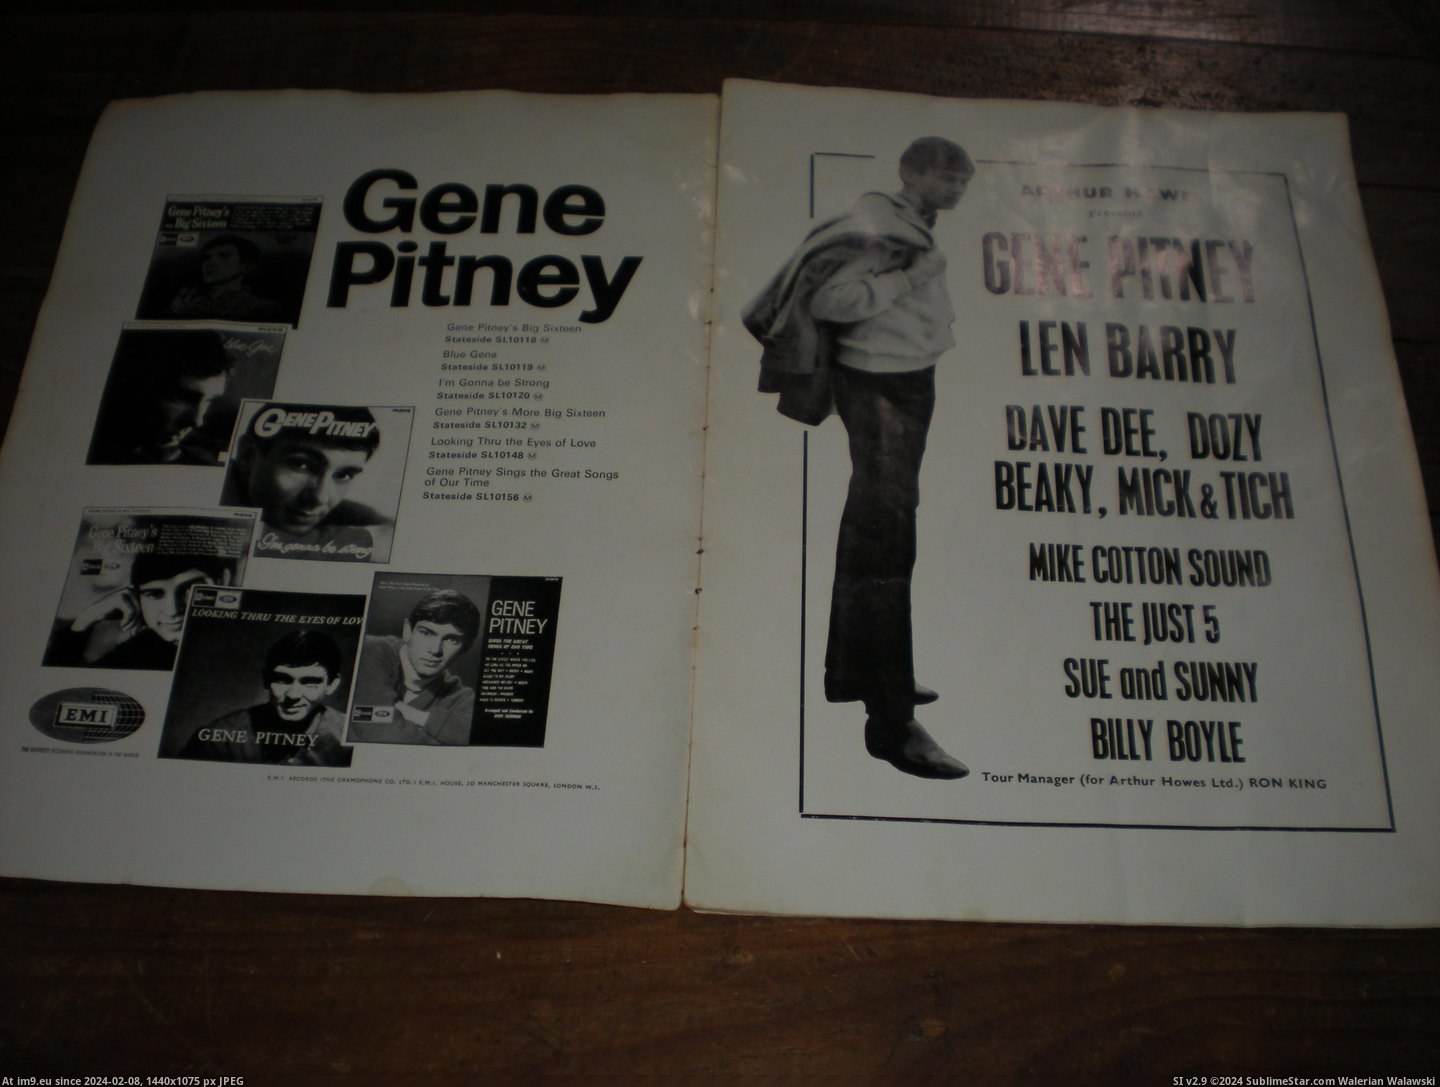 #Gene #Pitney #Prog Gene Pitney prog 3 Pic. (Image of album new 1))